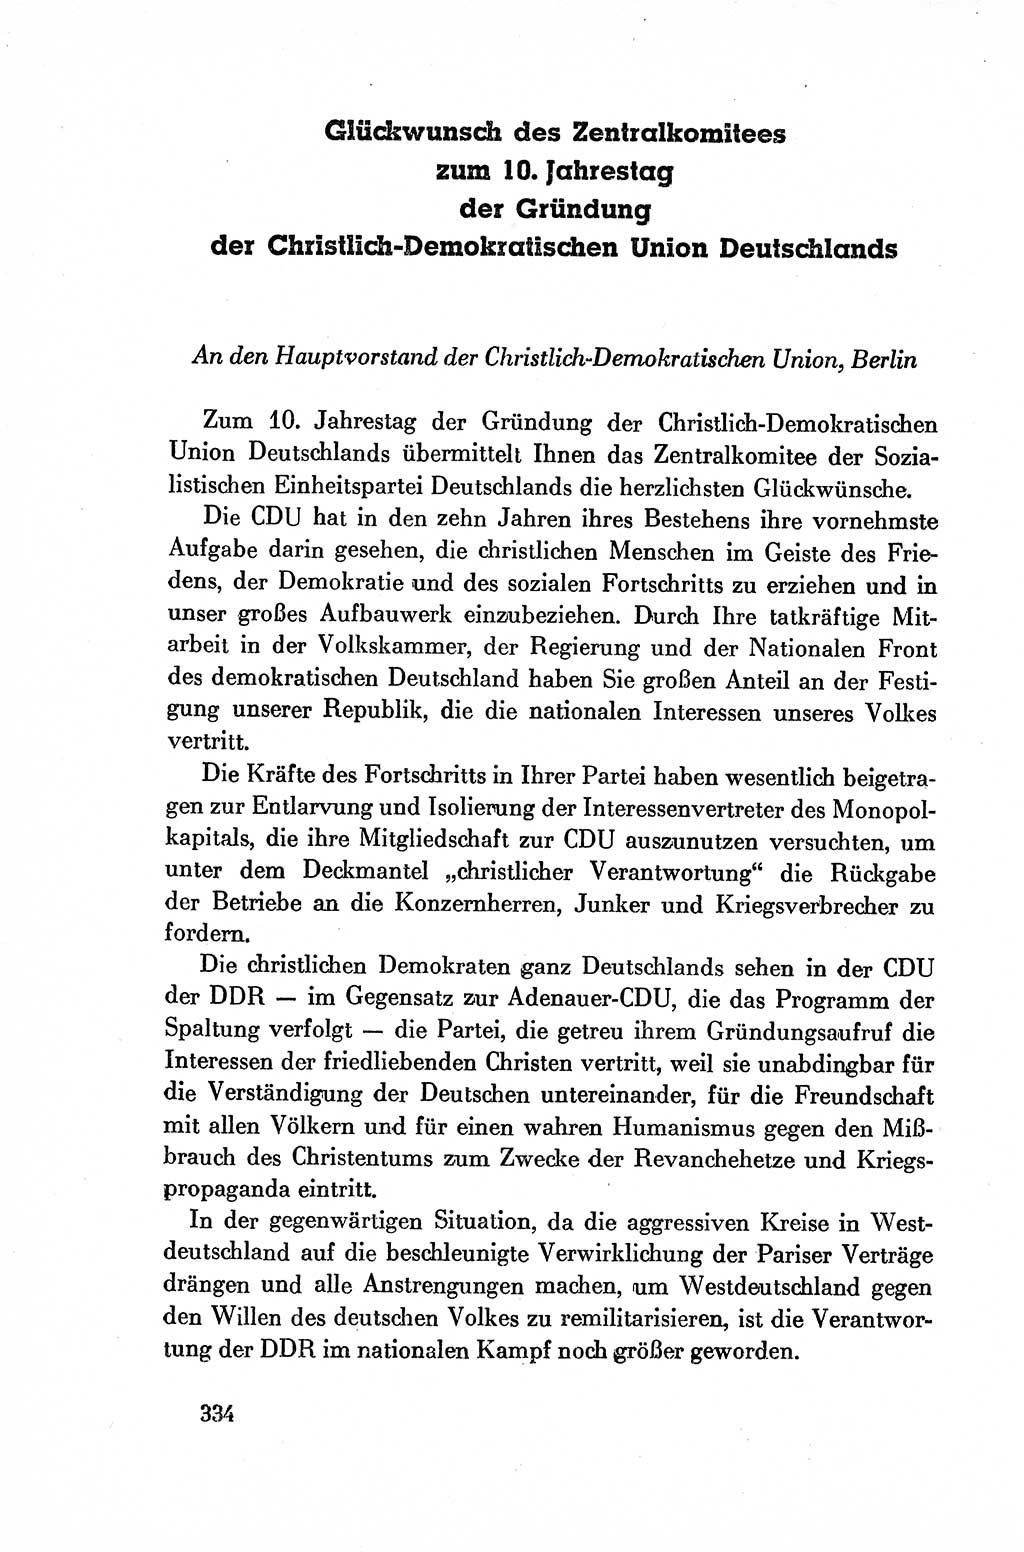 Dokumente der Sozialistischen Einheitspartei Deutschlands (SED) [Deutsche Demokratische Republik (DDR)] 1954-1955, Seite 334 (Dok. SED DDR 1954-1955, S. 334)